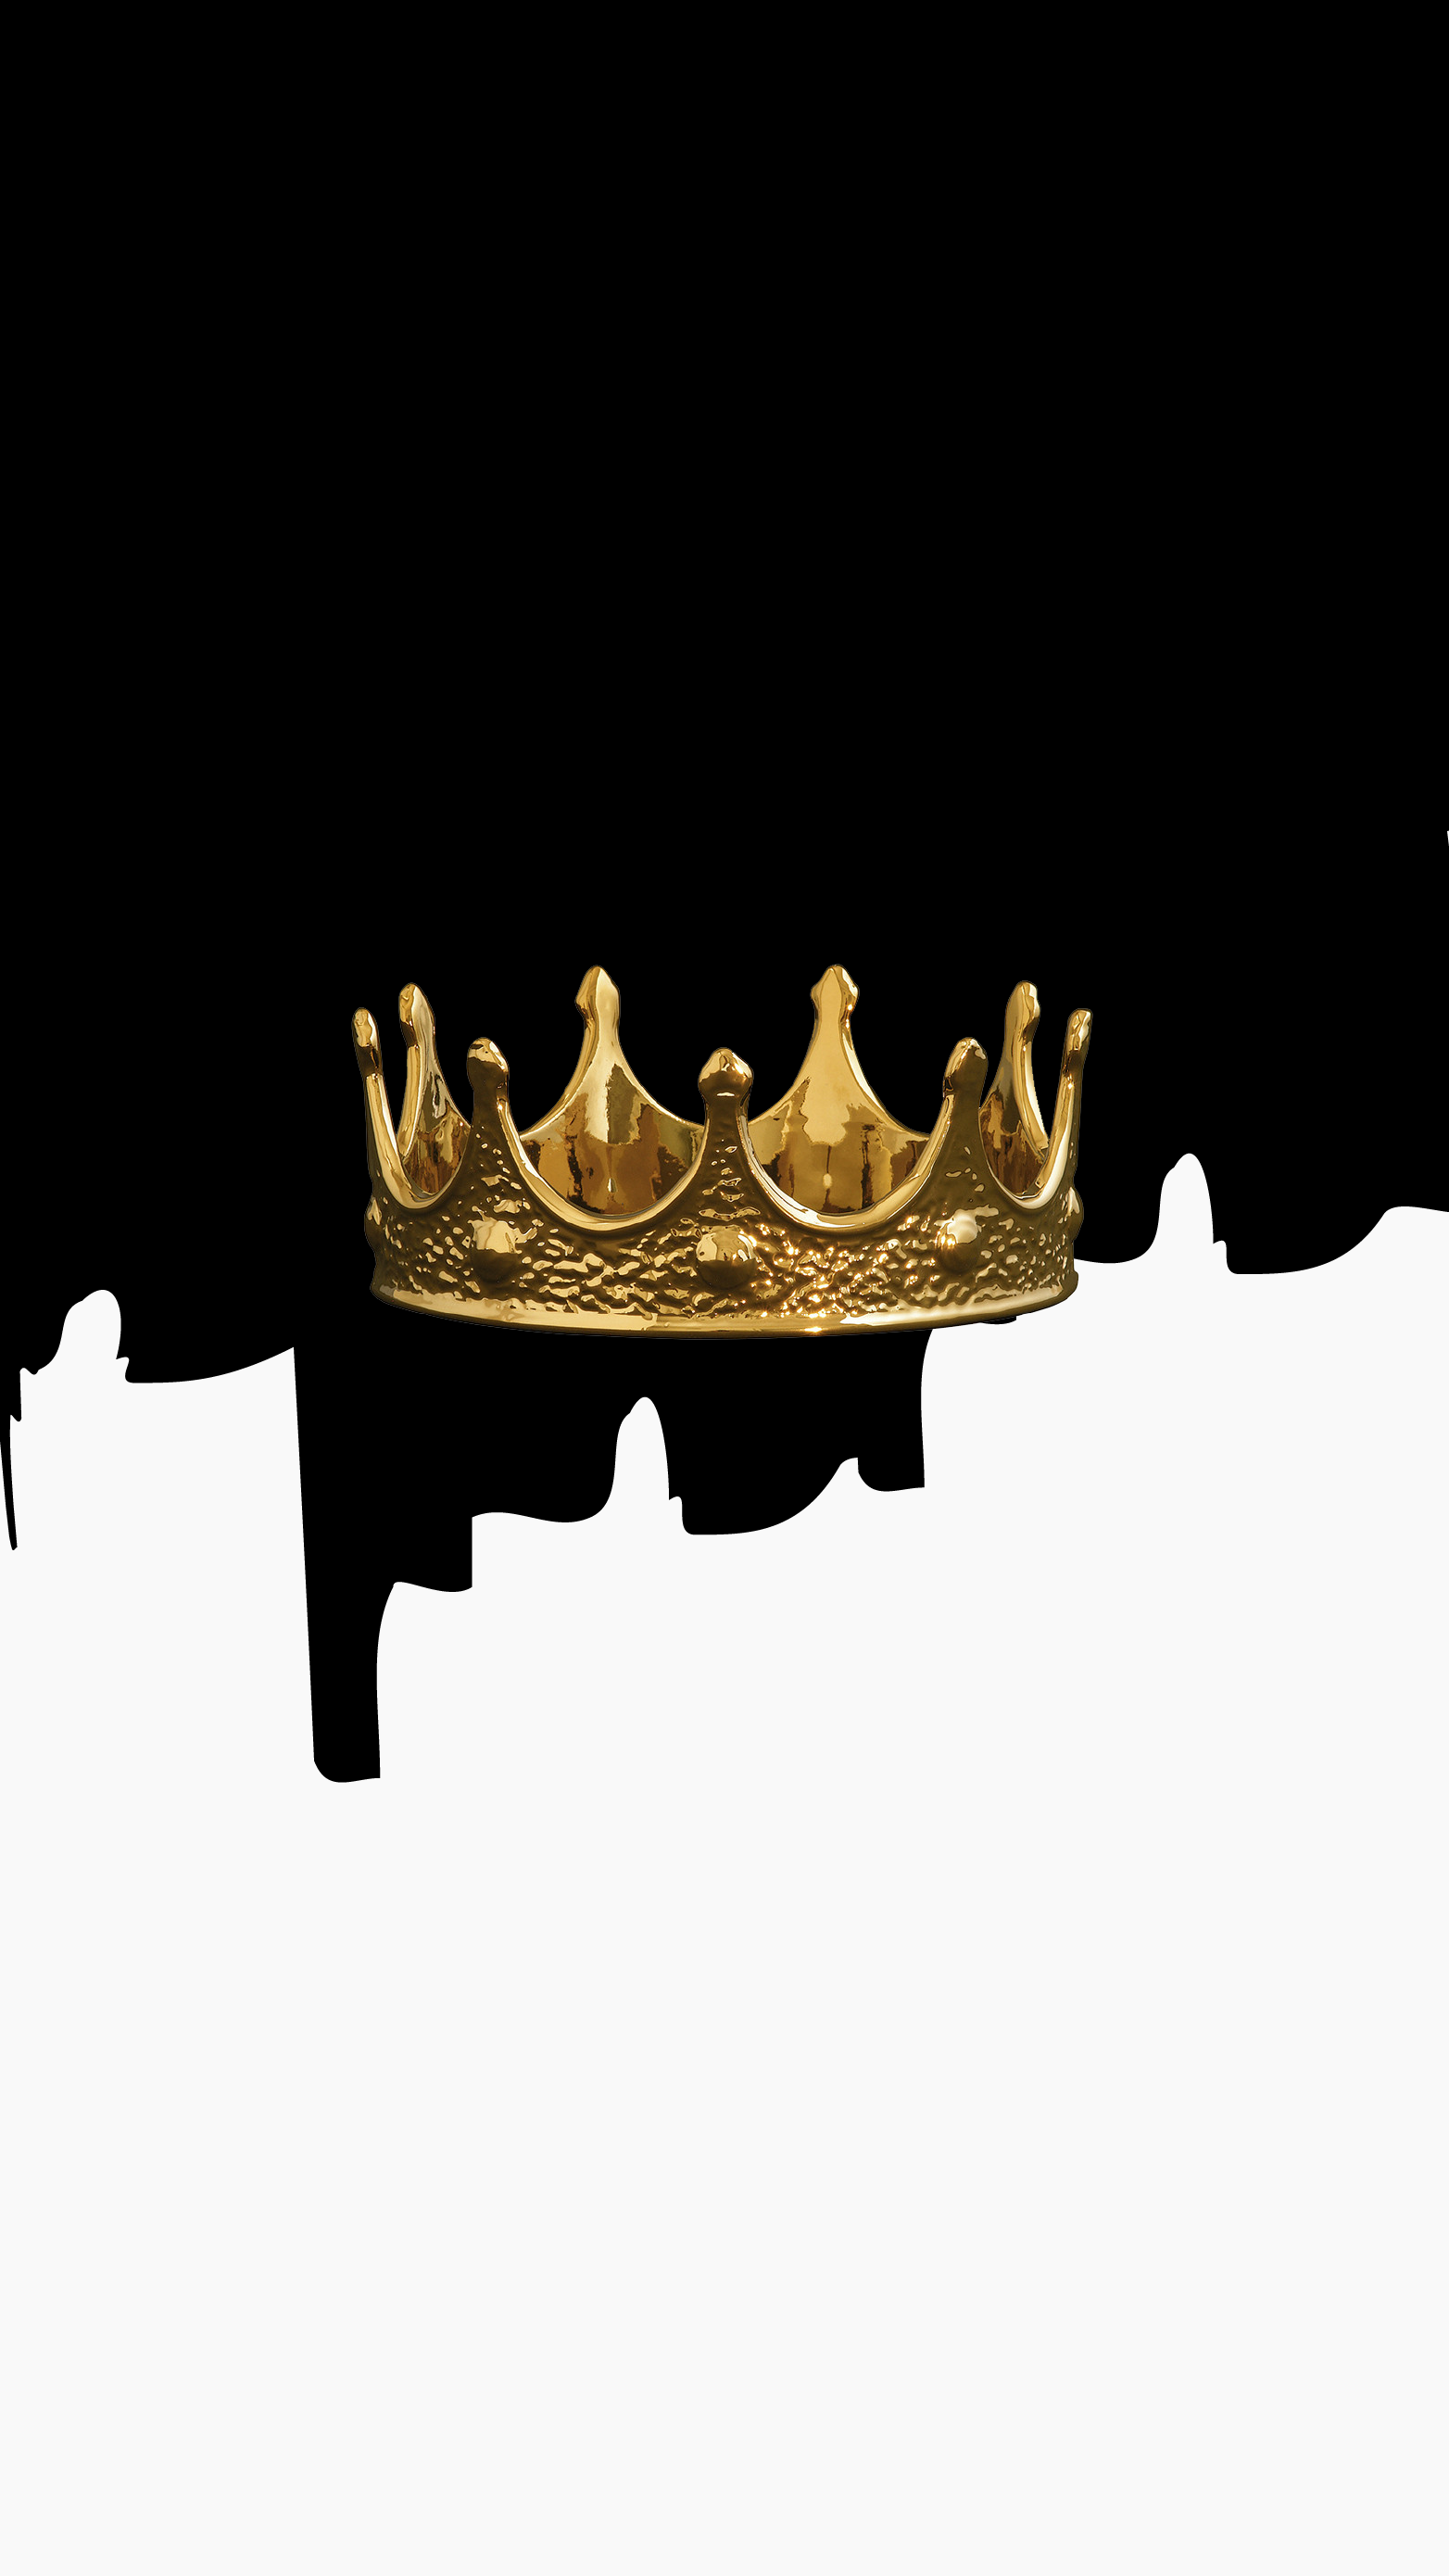 Queen Crown Wallpaper